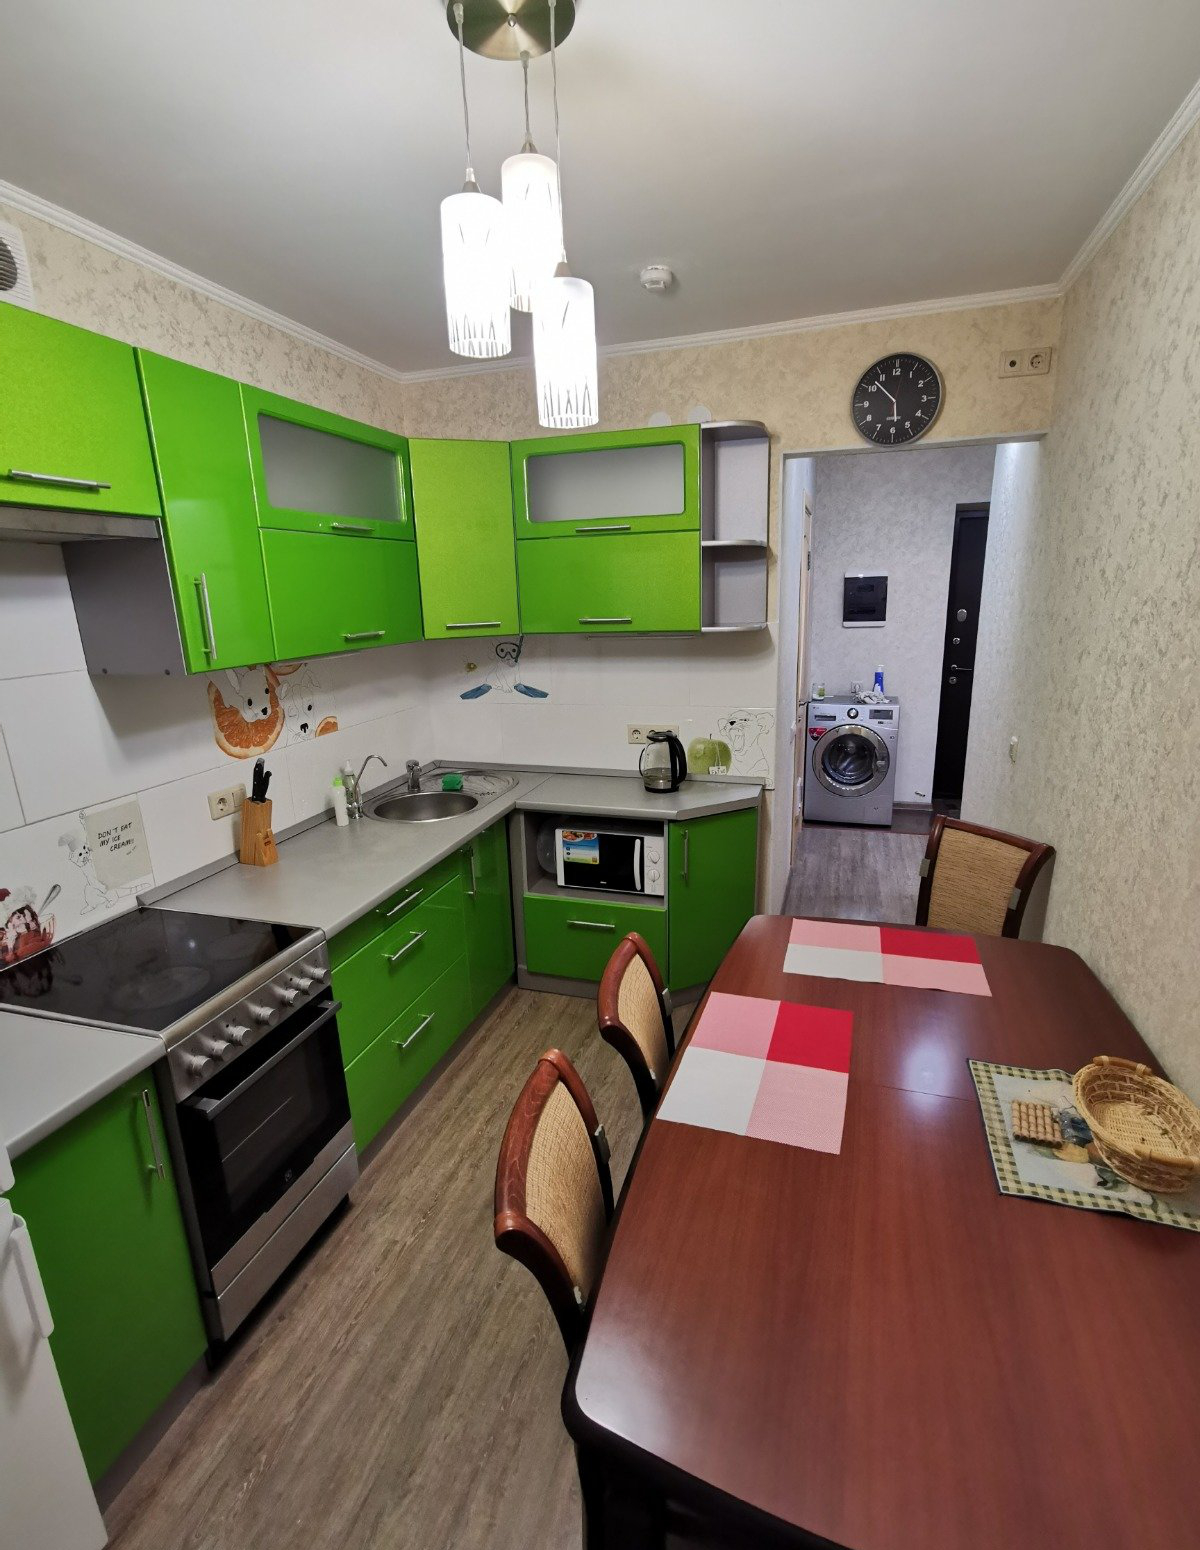 1 Комнатная квартира в Красноярске